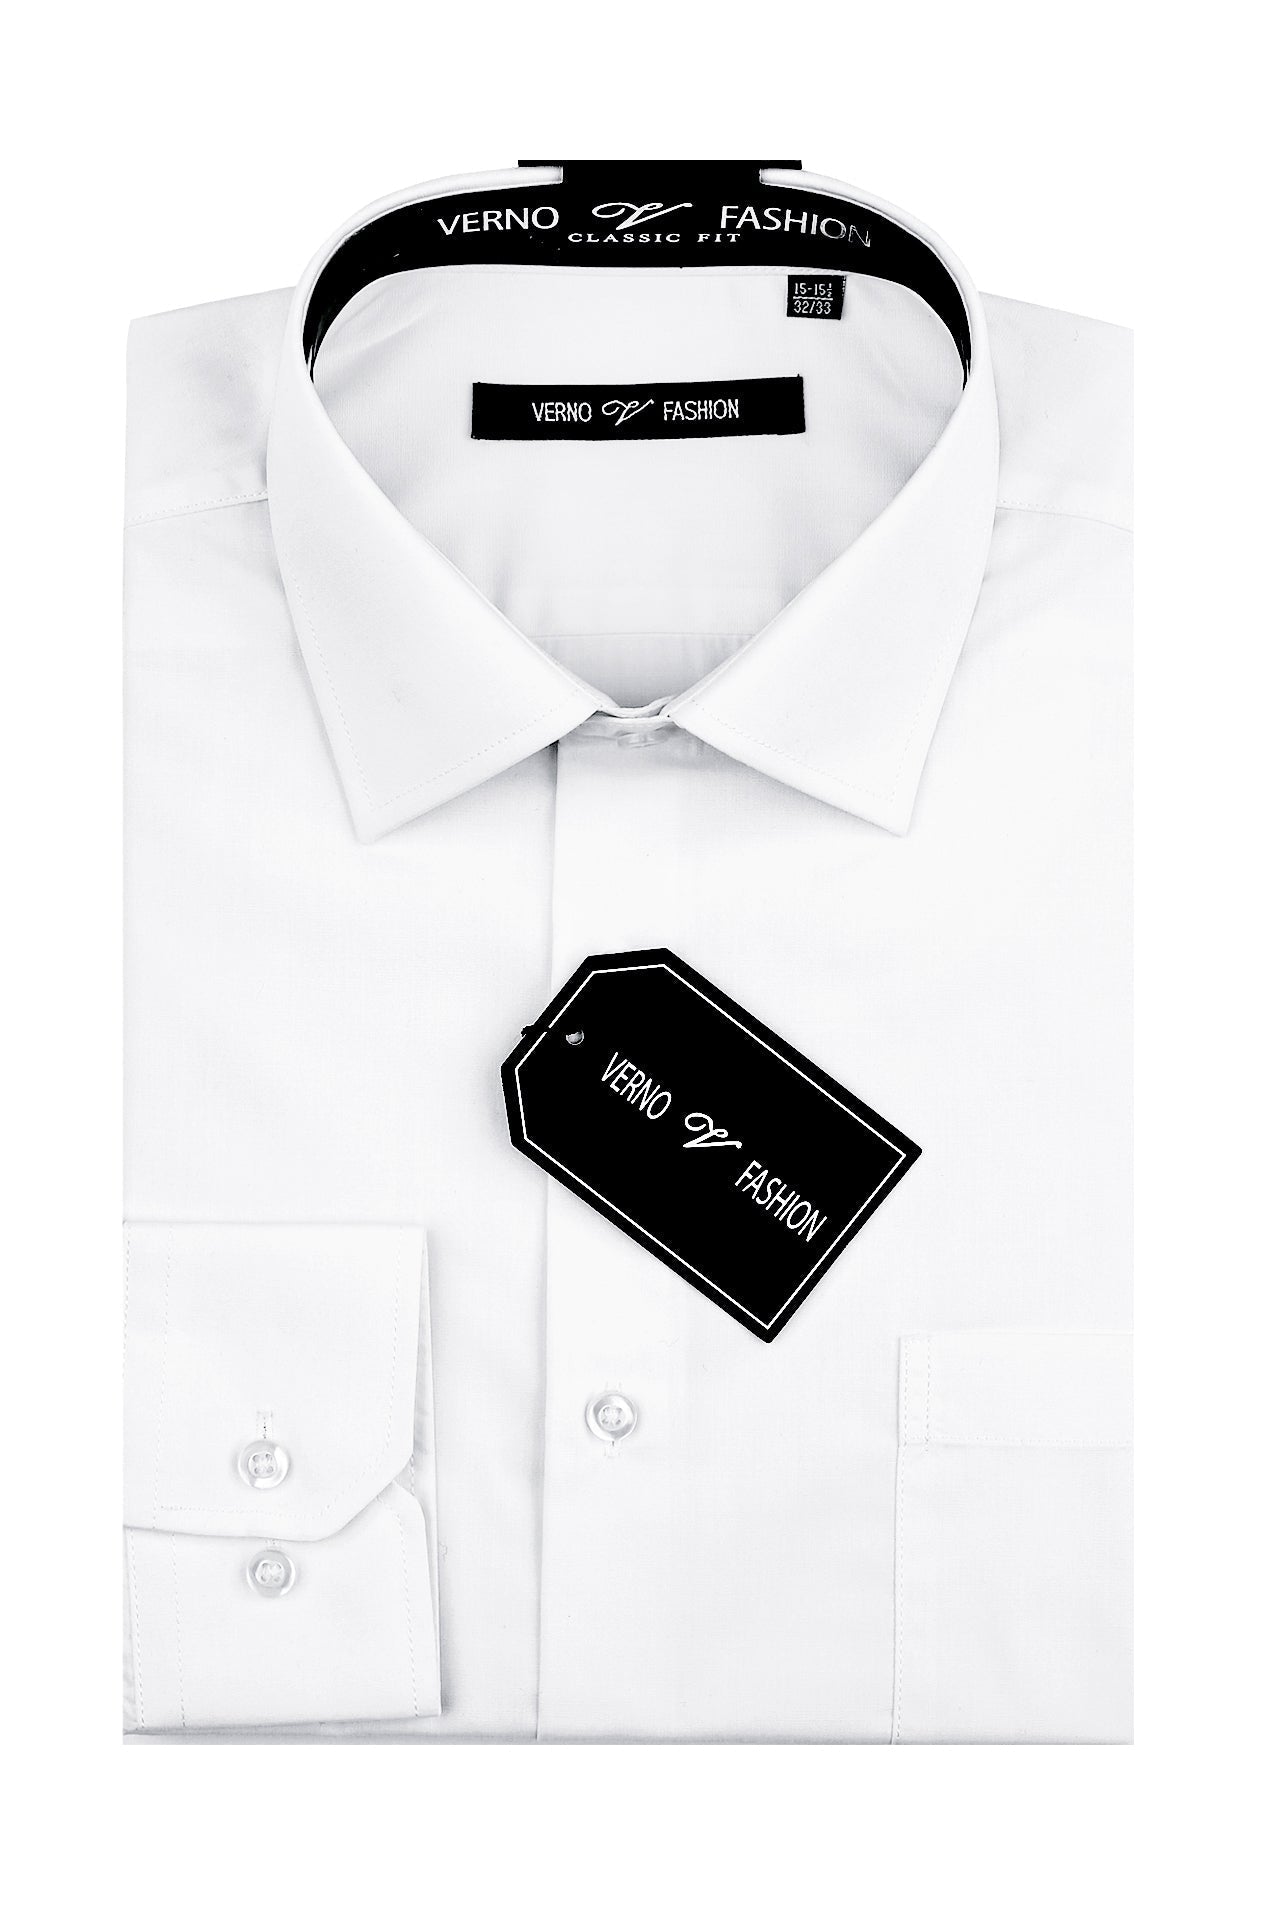 "Cotton Blend Men's Regular Fit Dress Shirt - White"